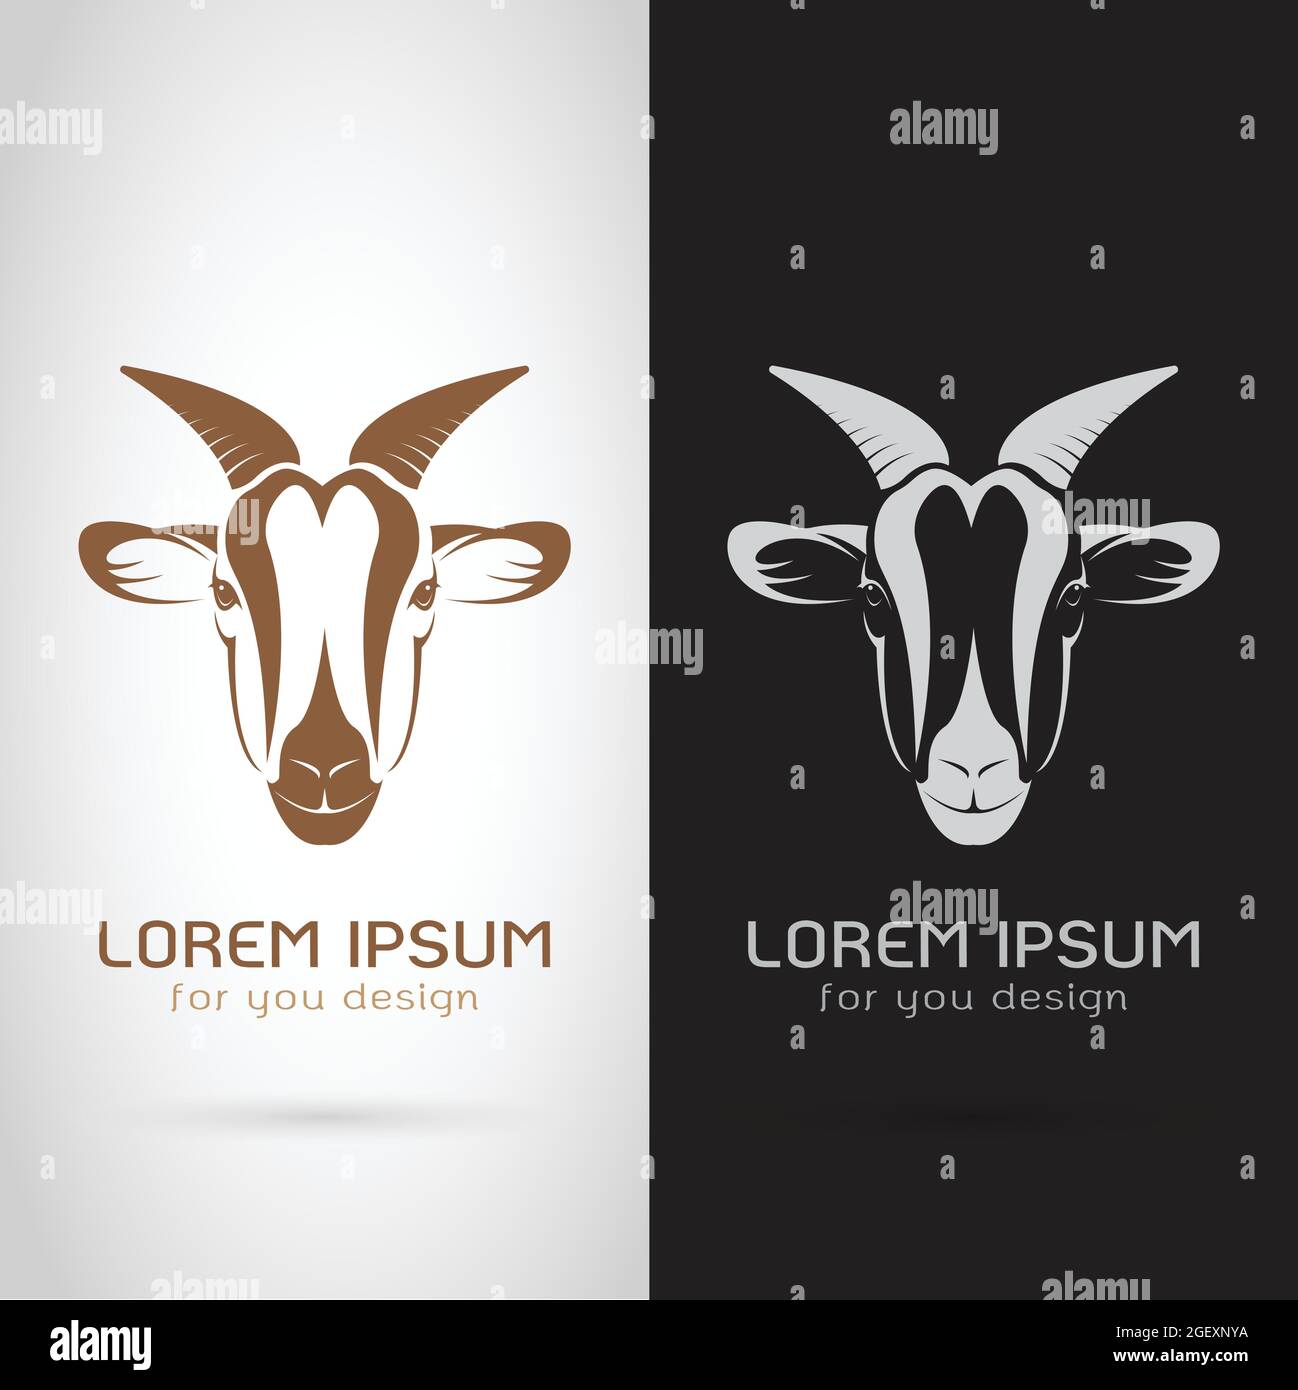 Motif vectoriel de la tête de chèvre sur fond blanc et noir, logo, symbole, étiquette, animaux Illustration de Vecteur